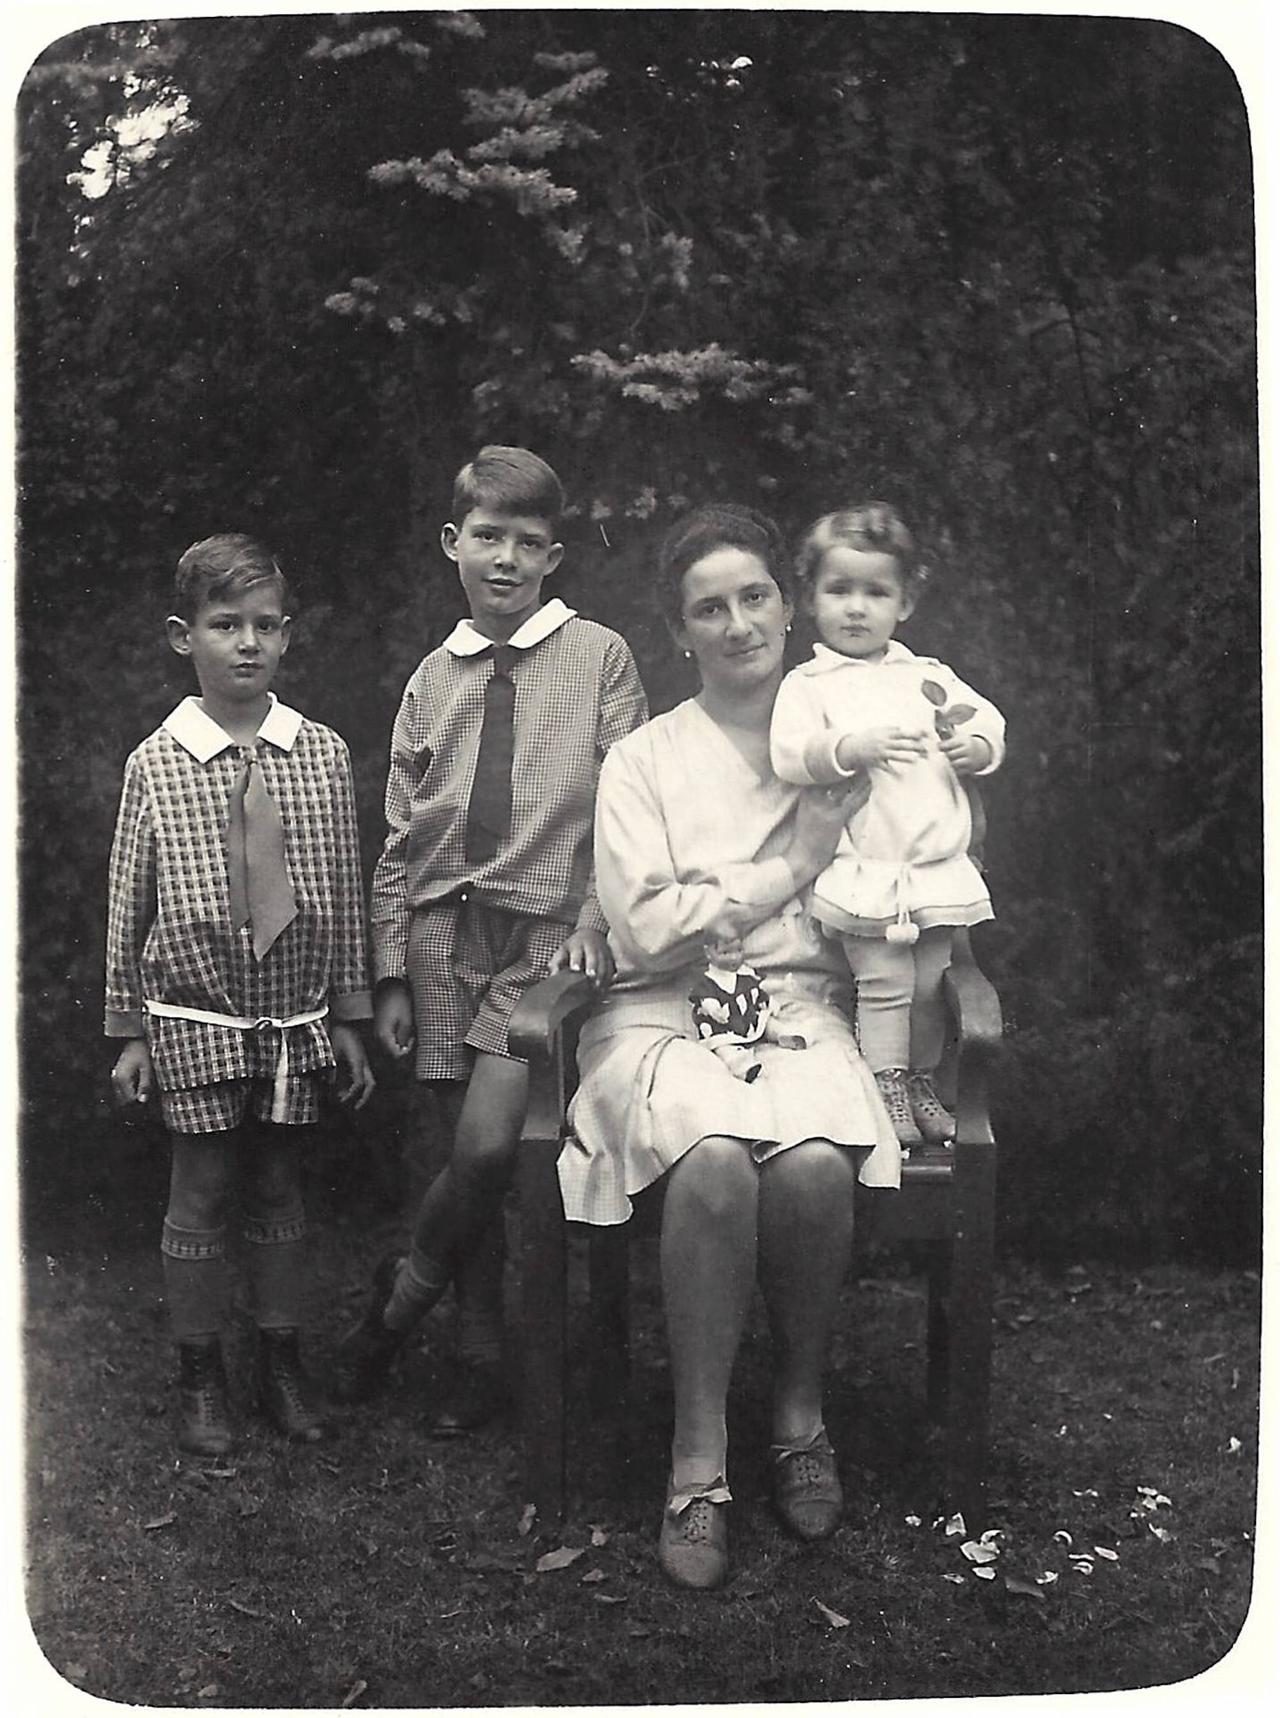 Schwarzweiß-Foto: Eine Frau im hellen Kleid sitzt draußen auf einem Stuhl und hält ihre kleine Tochter fest, daneben stehen zwei Jungen im Schulalter